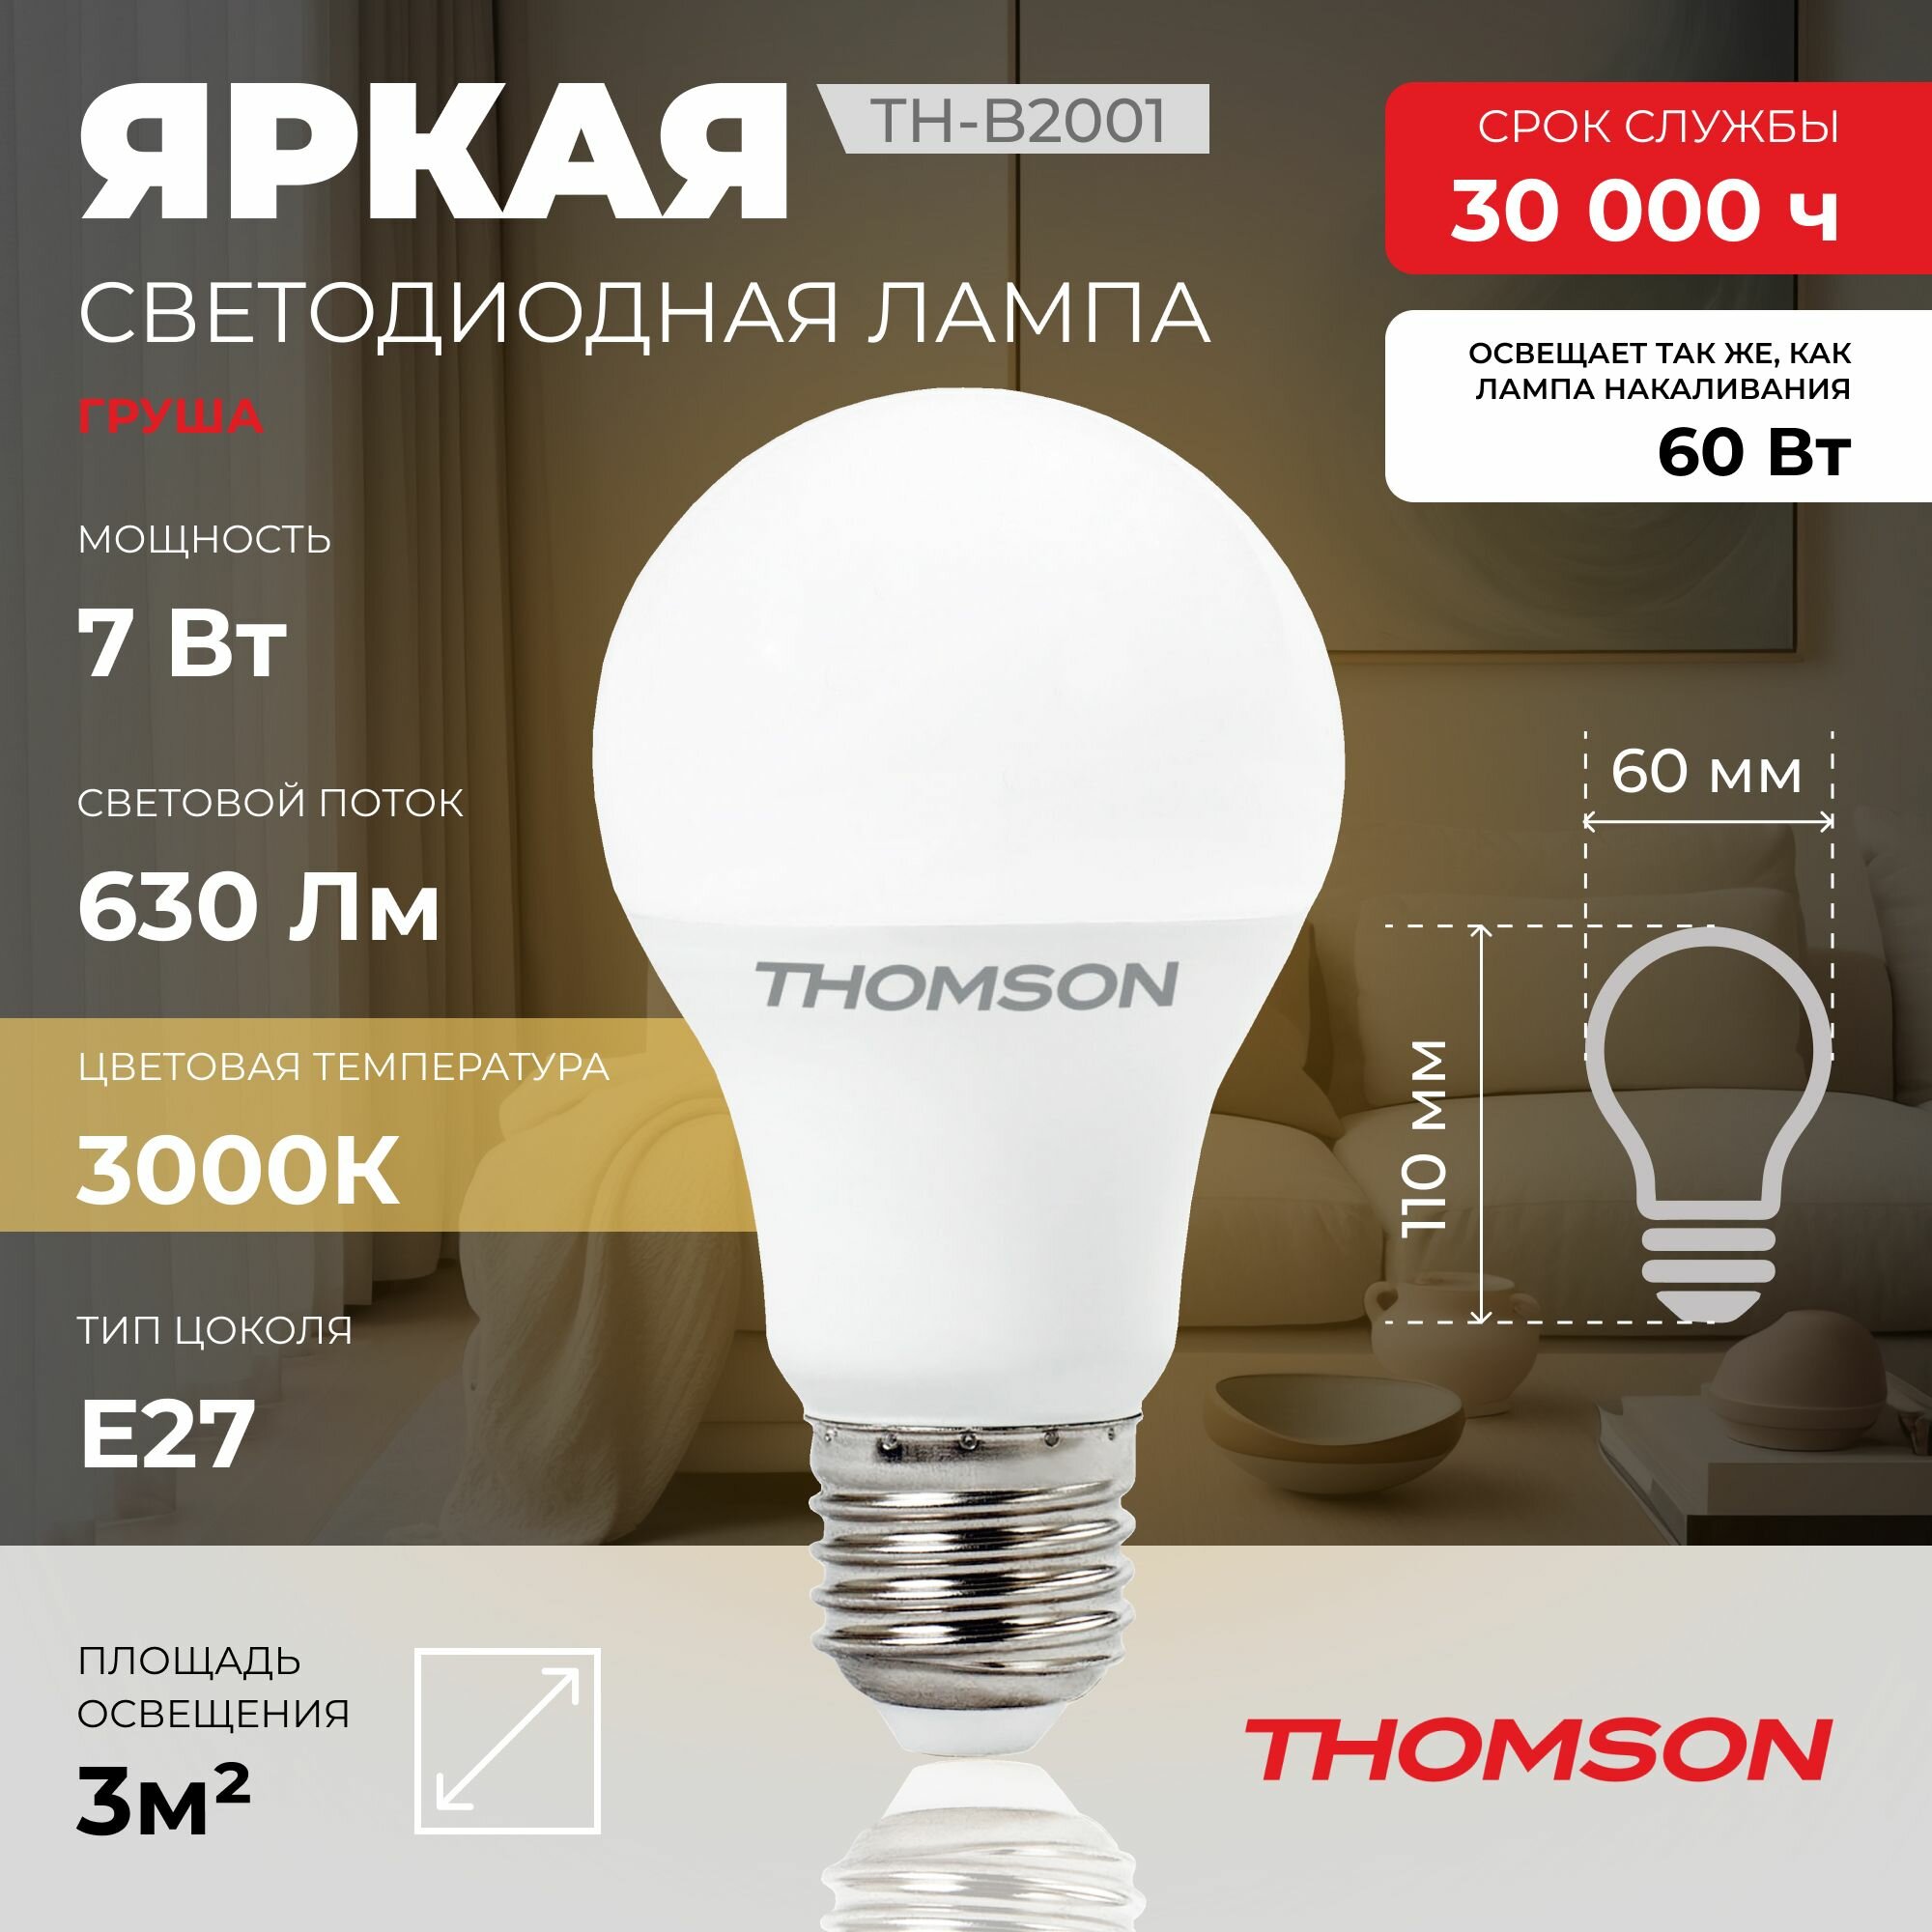 Лампочка Thomson TH-B2001 7 Вт E27 3000К груша теплый белый свет